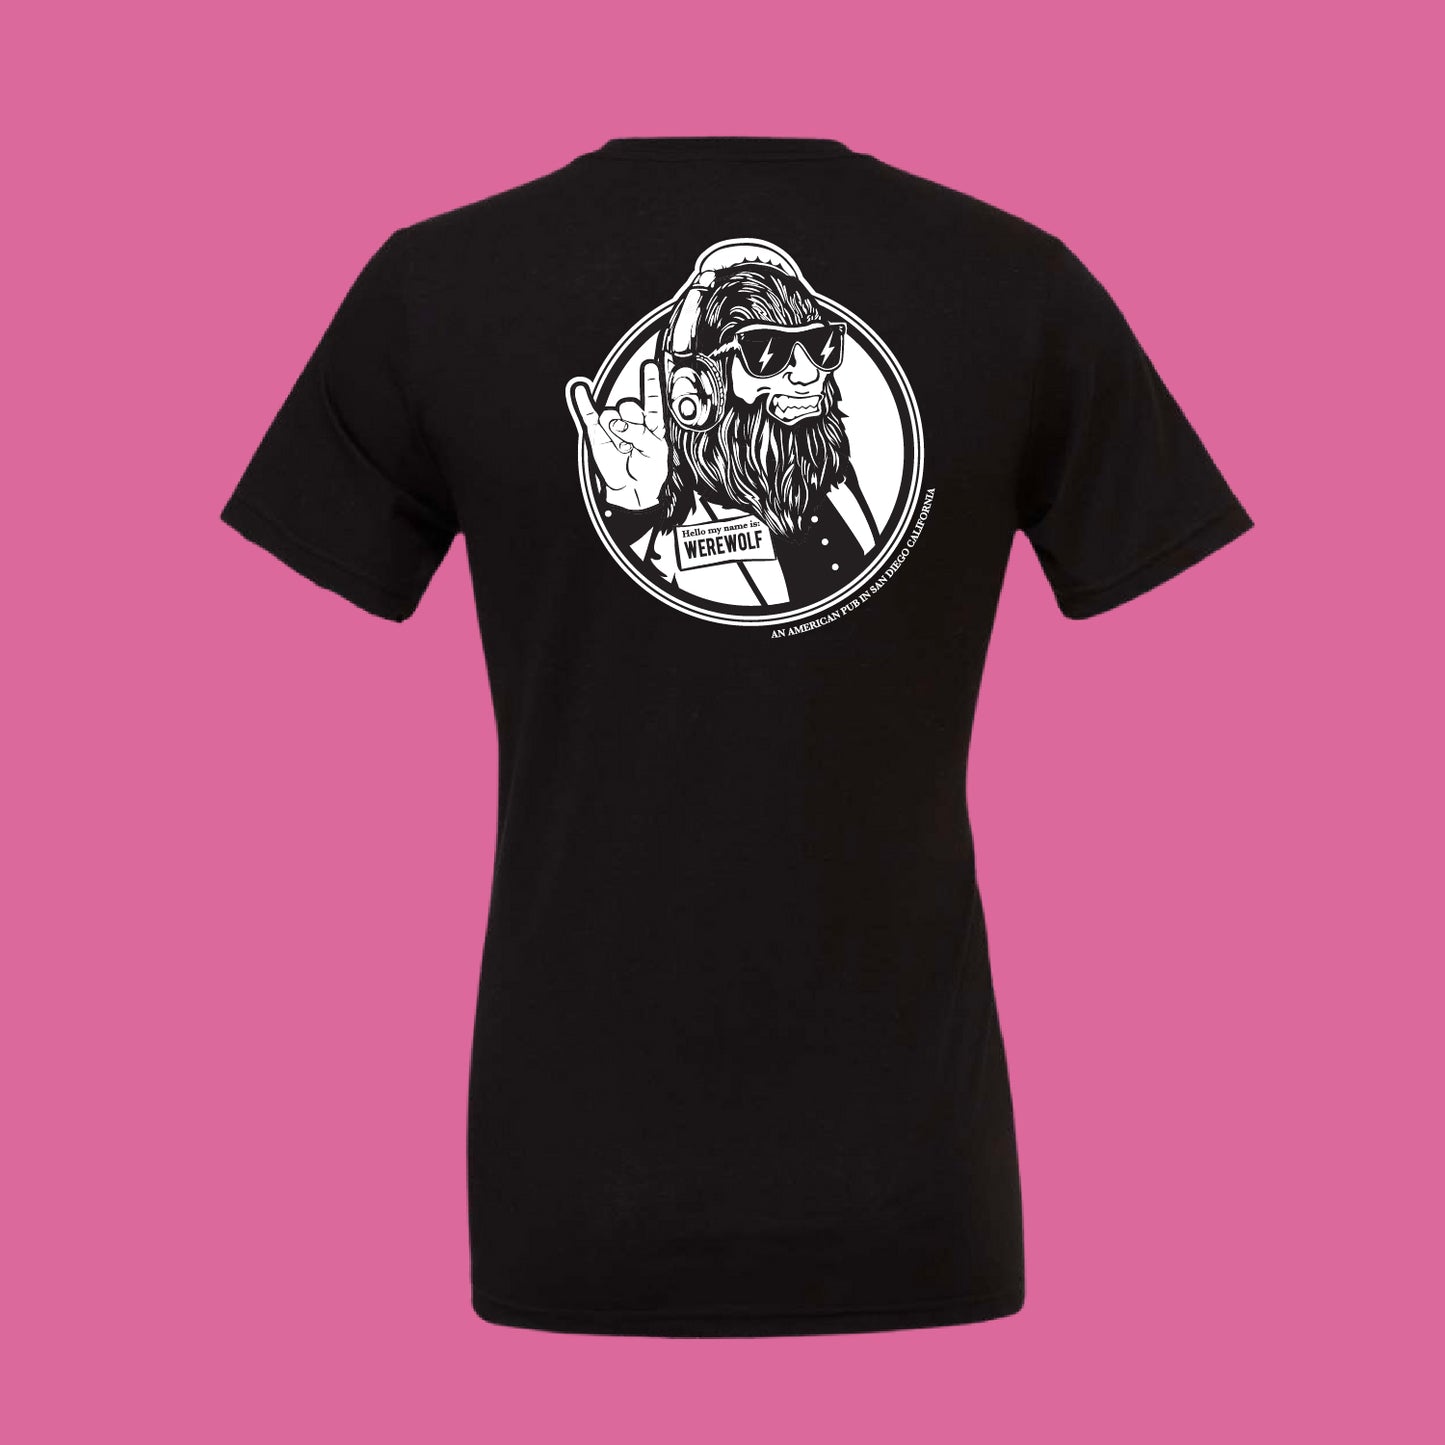 100% cotton unisex black Werewolf t-shirt